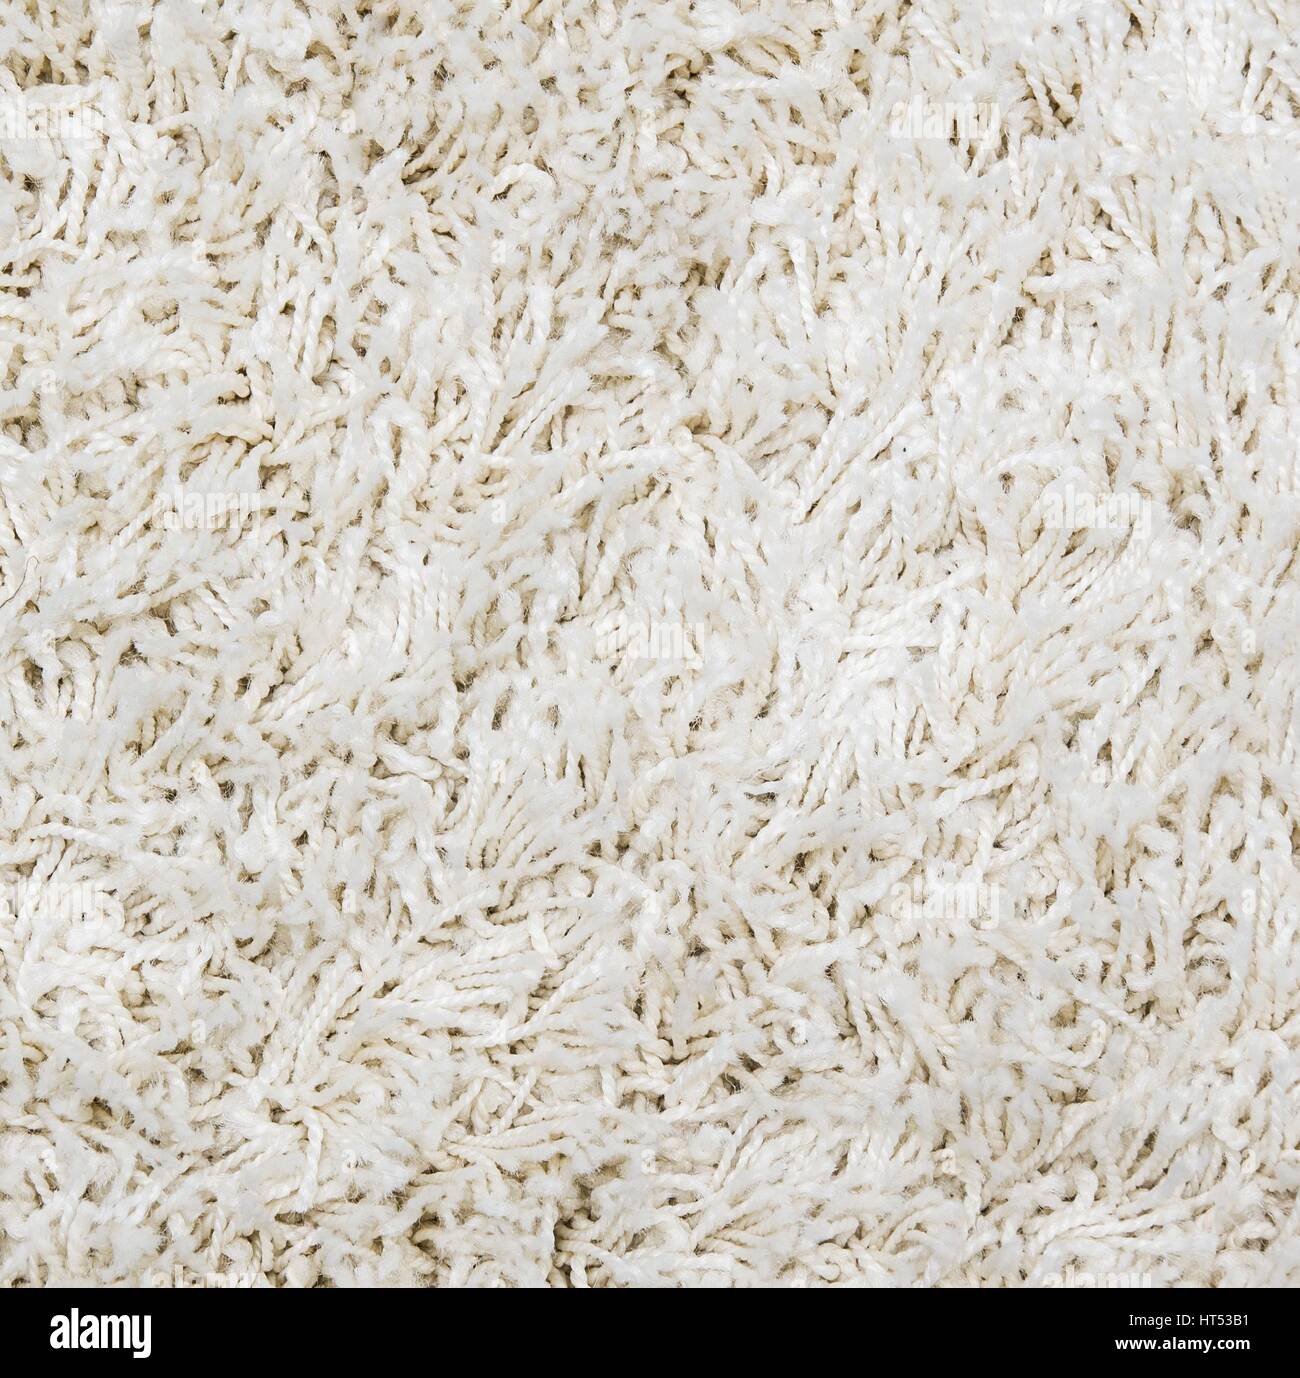 White shaggy carpet background Stock Photo